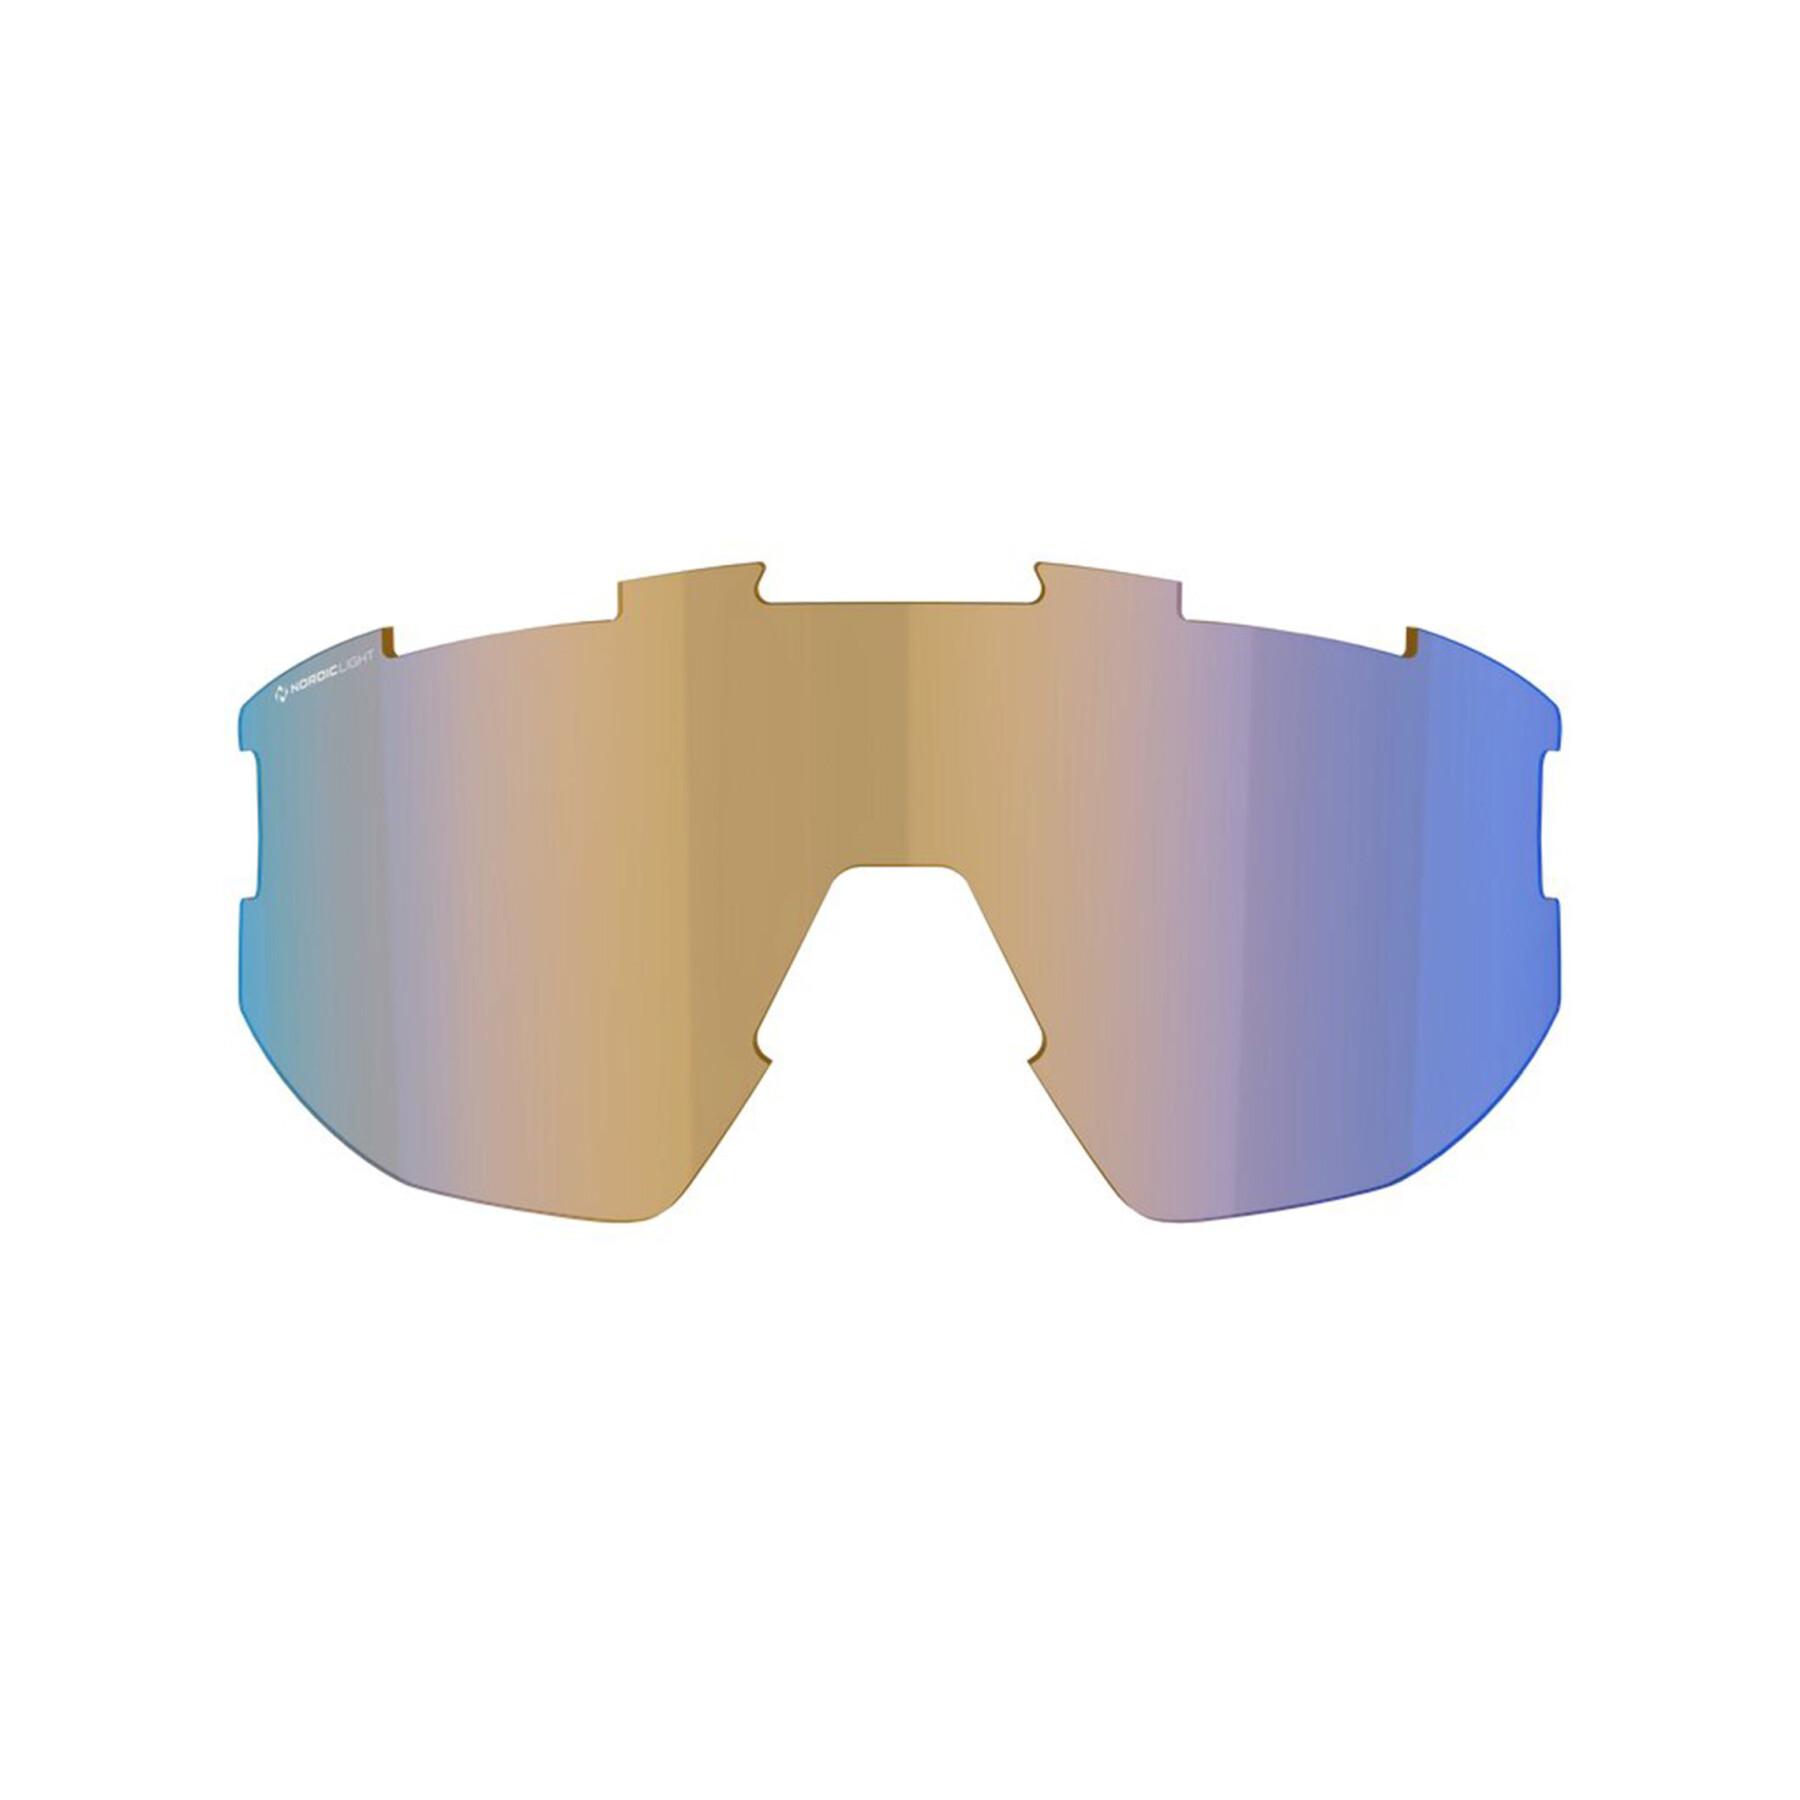 Zapasowe soczewki do małych okularów Bliz Matrix nano optic